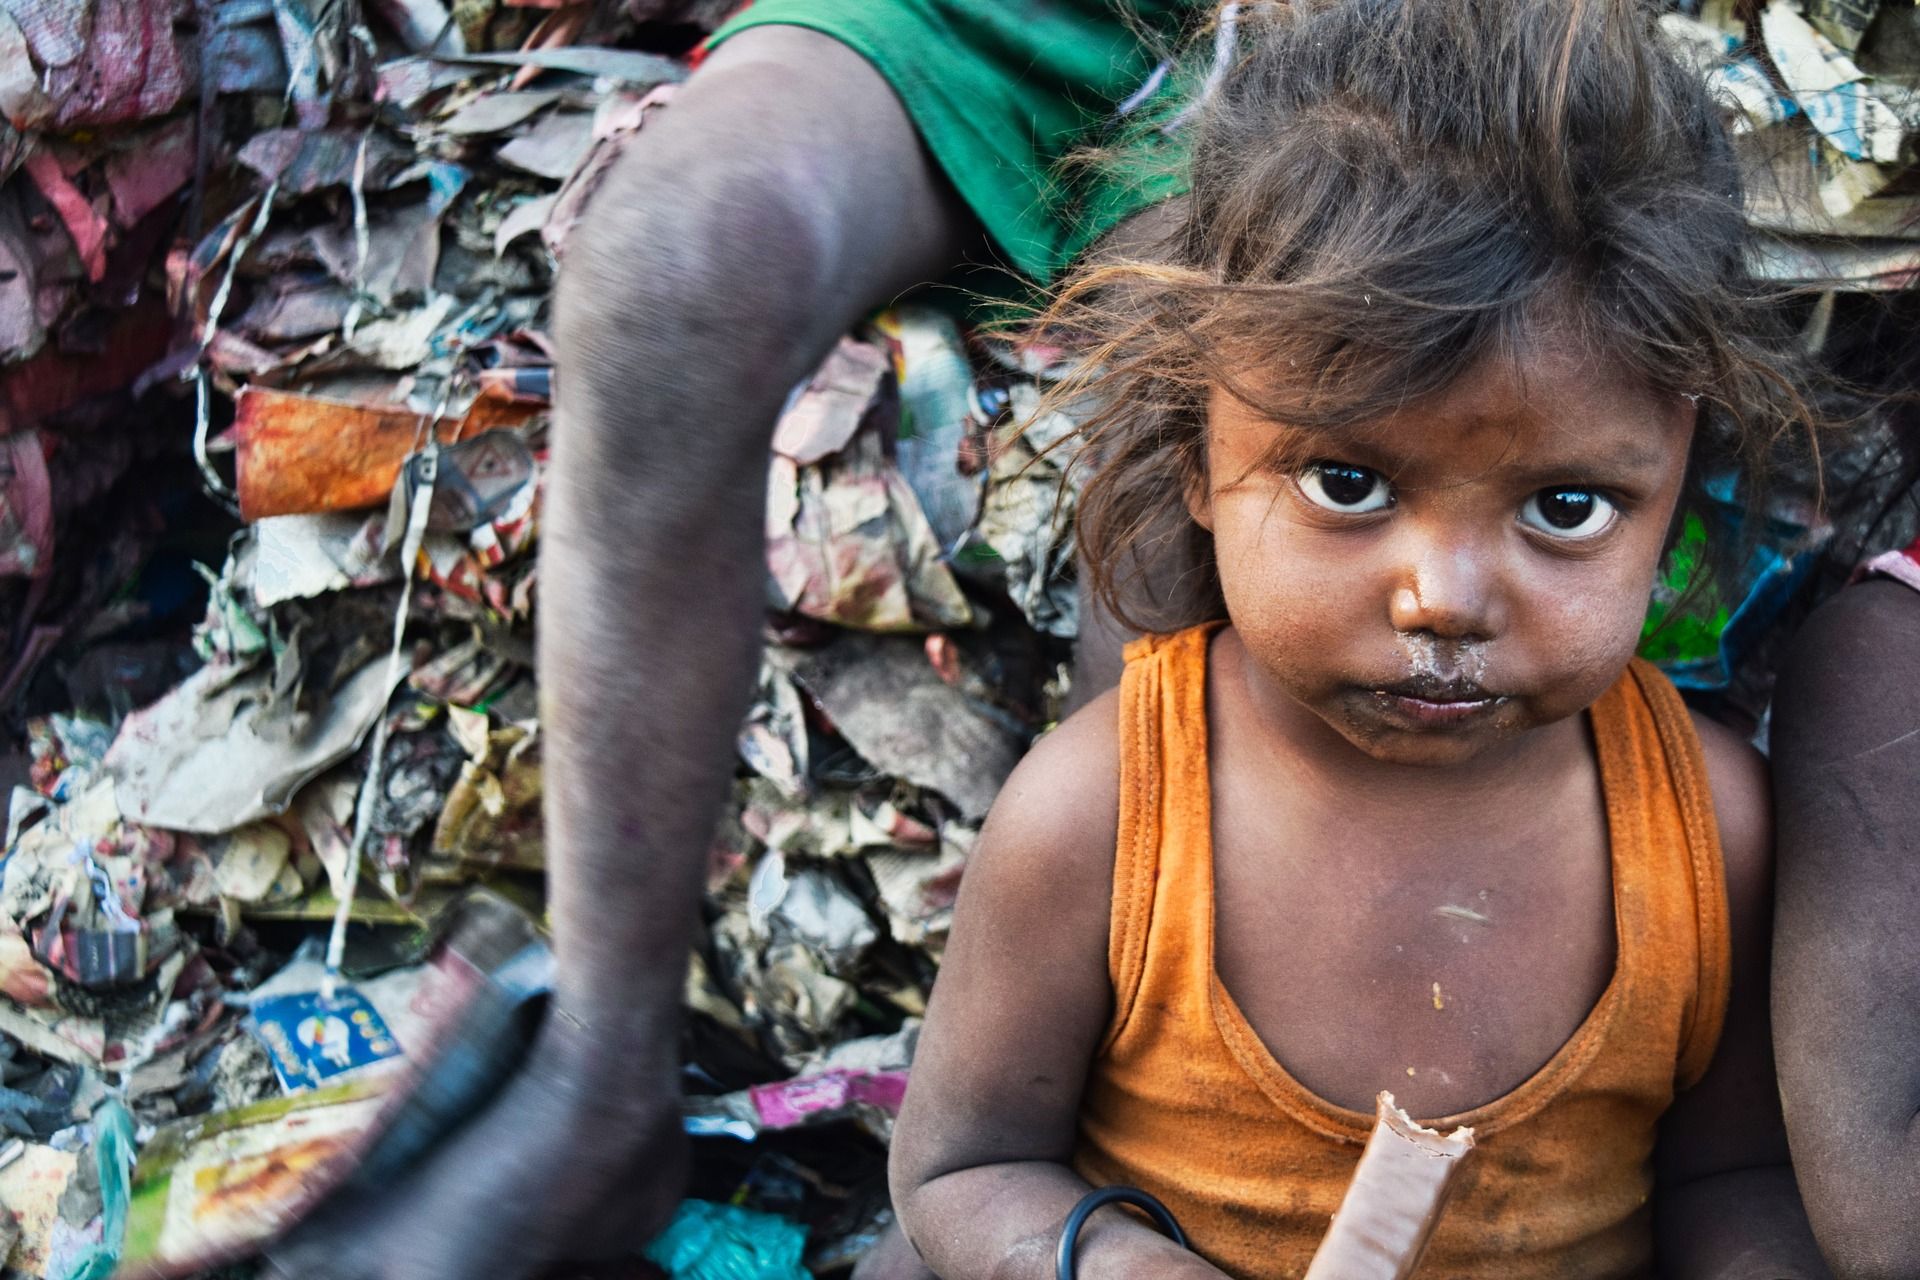 La pobreza ambiental afecta ya a millones de personas en el mundo / Foto: The Conversation